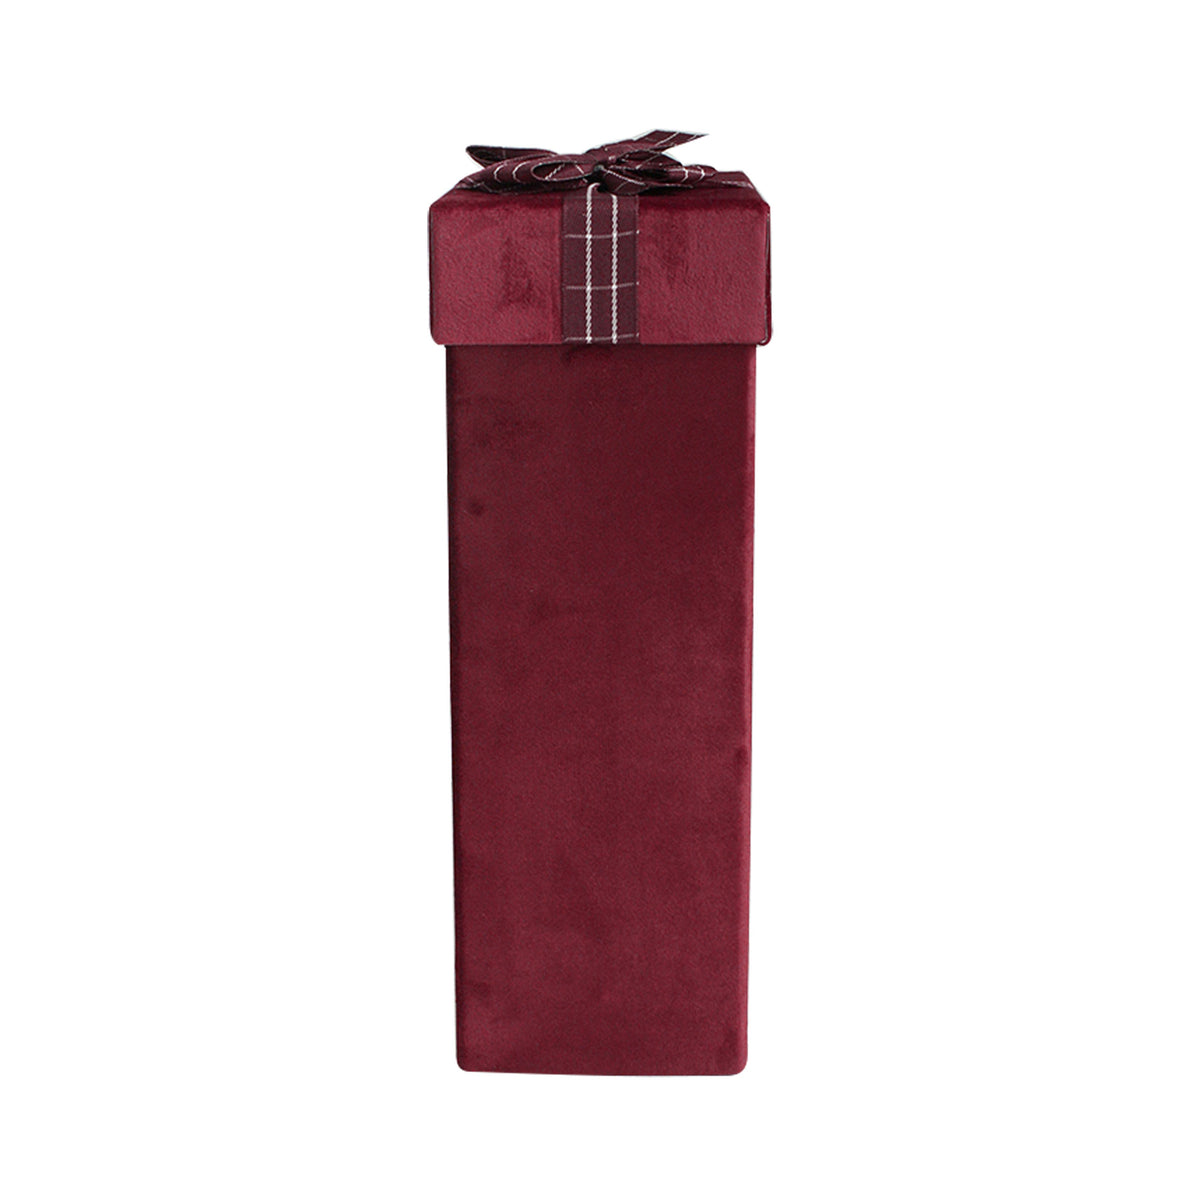 Single Burgundy Velvet Wine Gift Box with Striped Ribbon